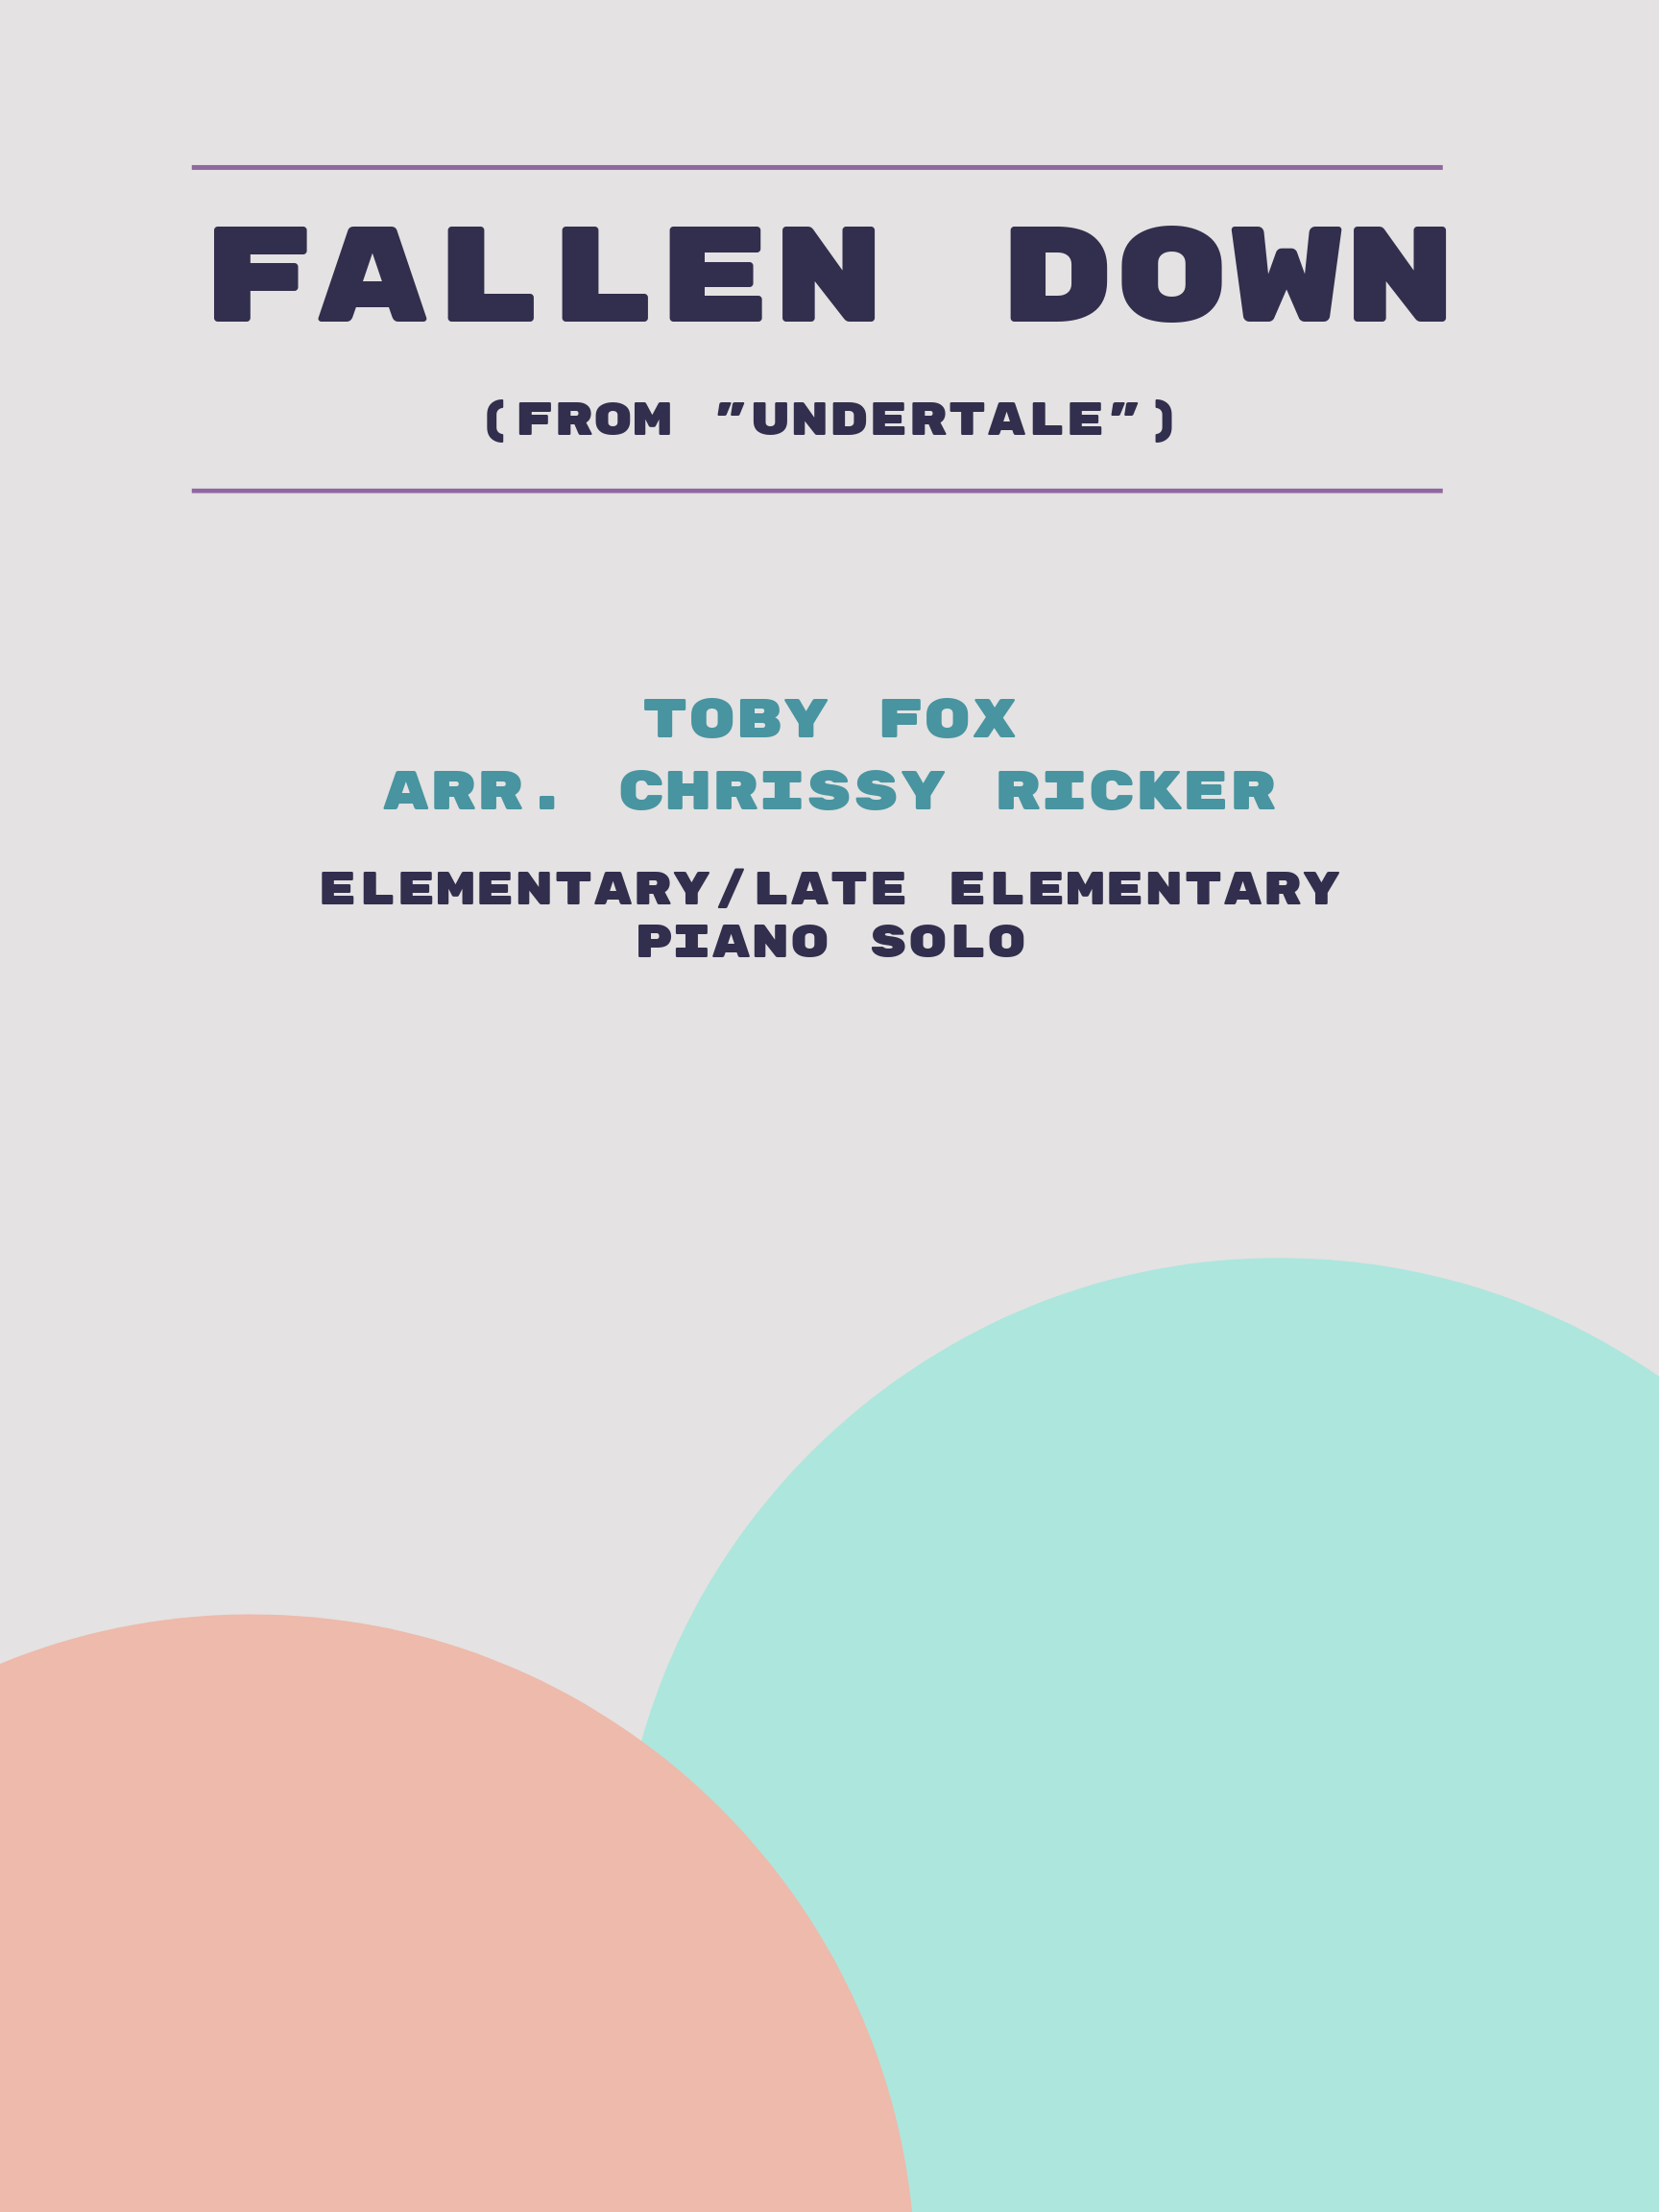 Fallen Down by Toby Fox